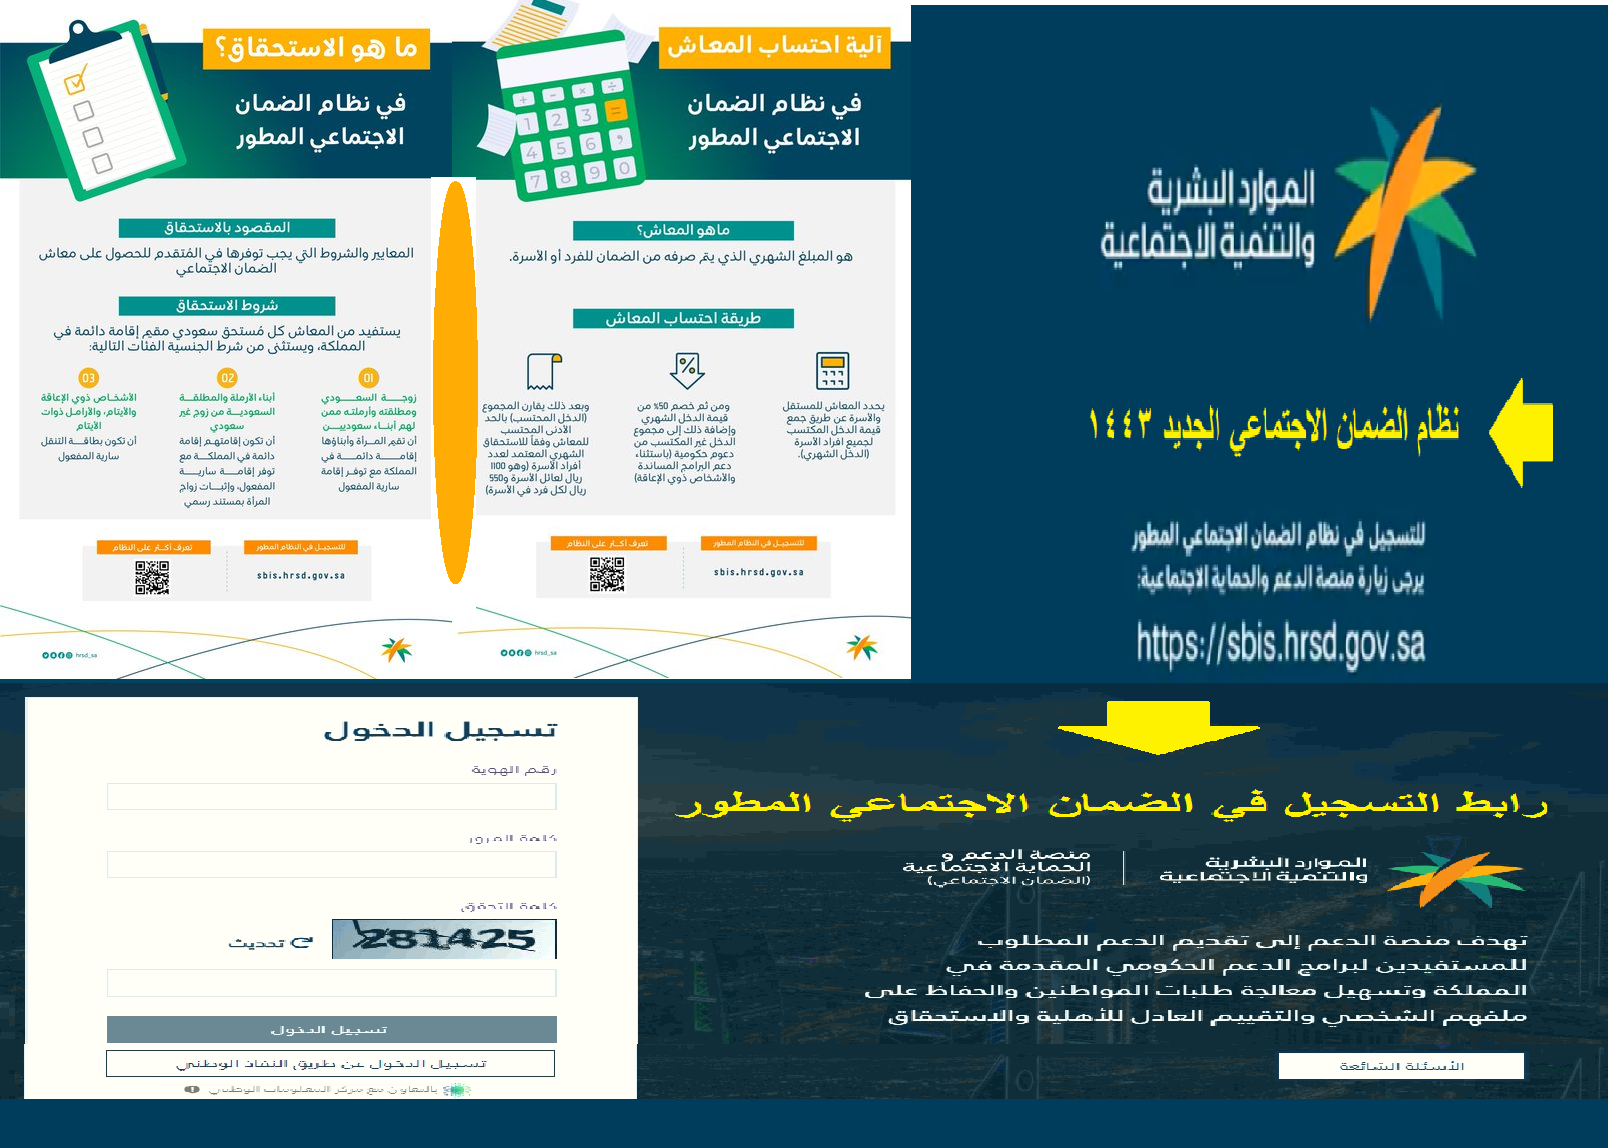 رابط التسجيل والتقديم على الضمان الاجتماعي الجديد شروط الاستحقاق بمنصة الدعم والحماية الاجتماعية - مدونة التقنية العربية